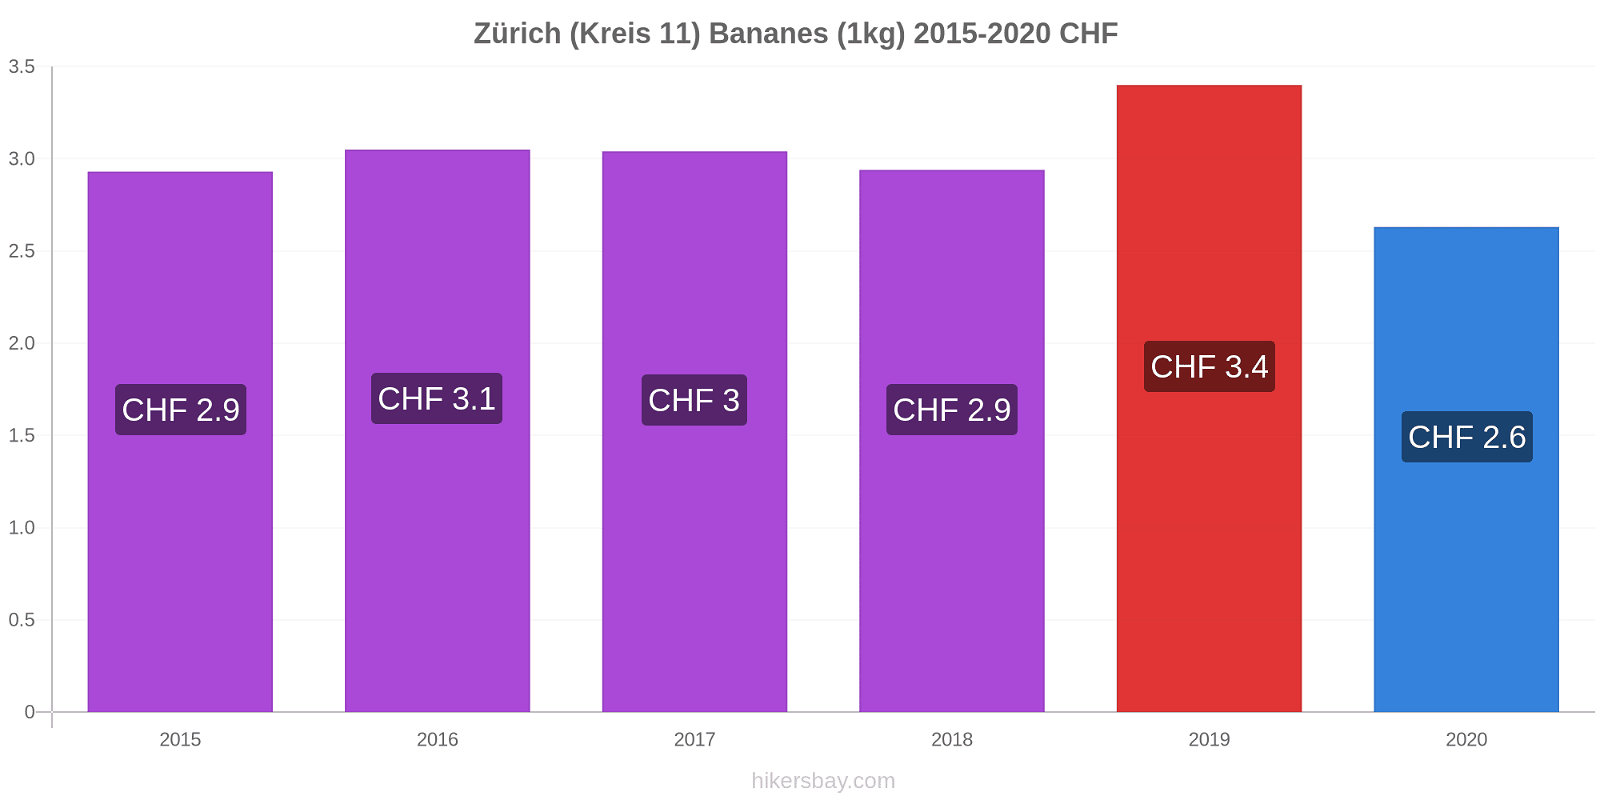 Zürich (Kreis 11) changements de prix Bananes (1kg) hikersbay.com